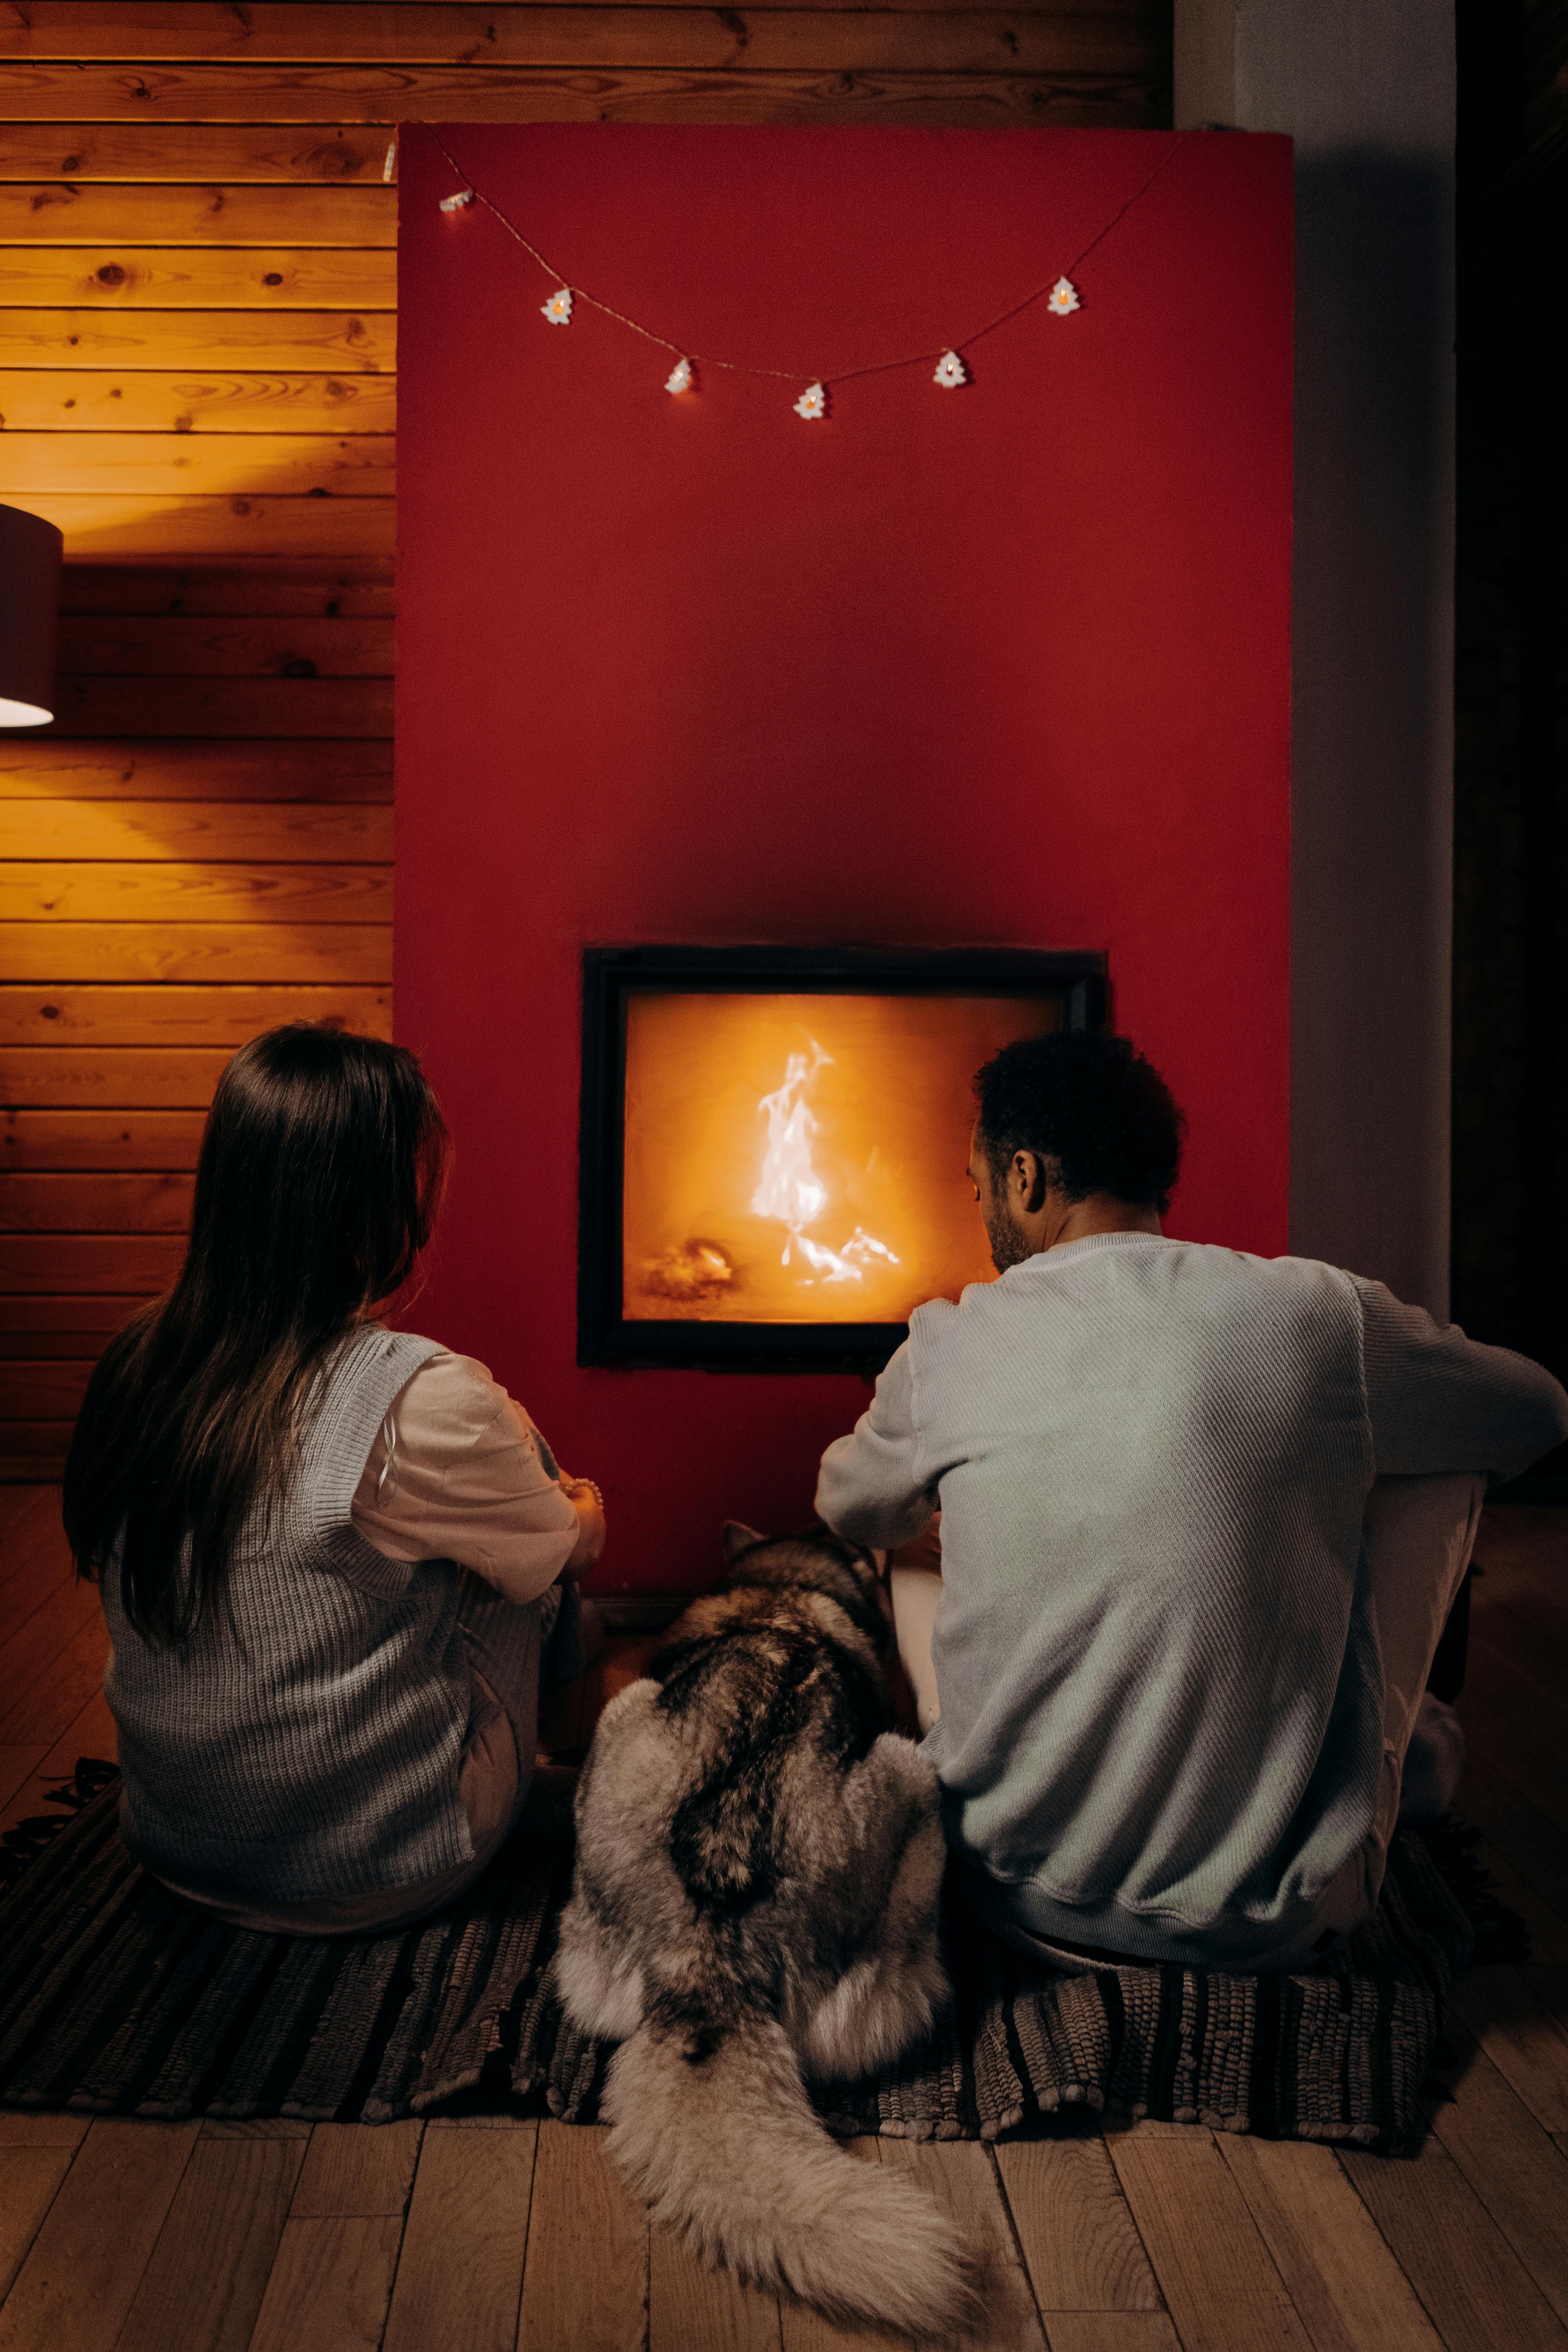 Un couple assis près de la cheminée avec un chien | Source : Pexels